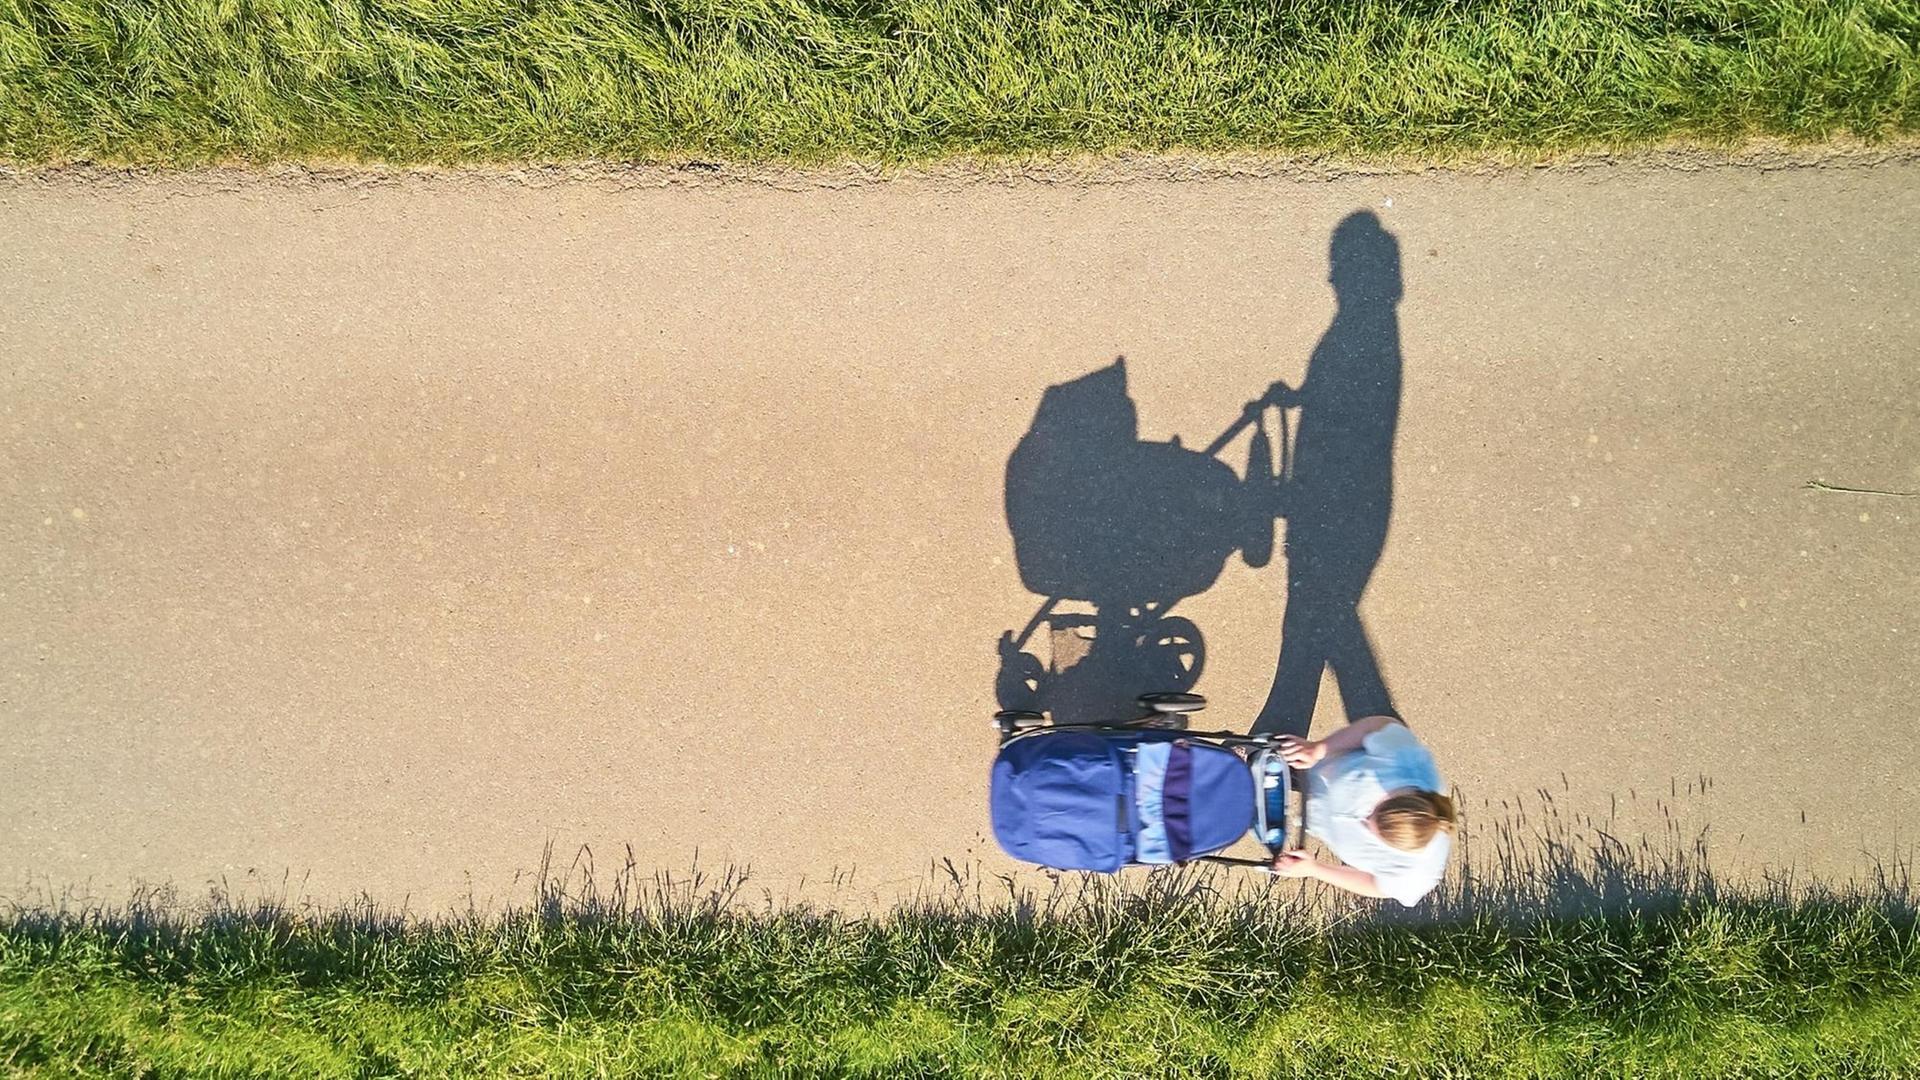 Luftbild: Eine Mutter mit Kinderwagen auf einsamer Straße.